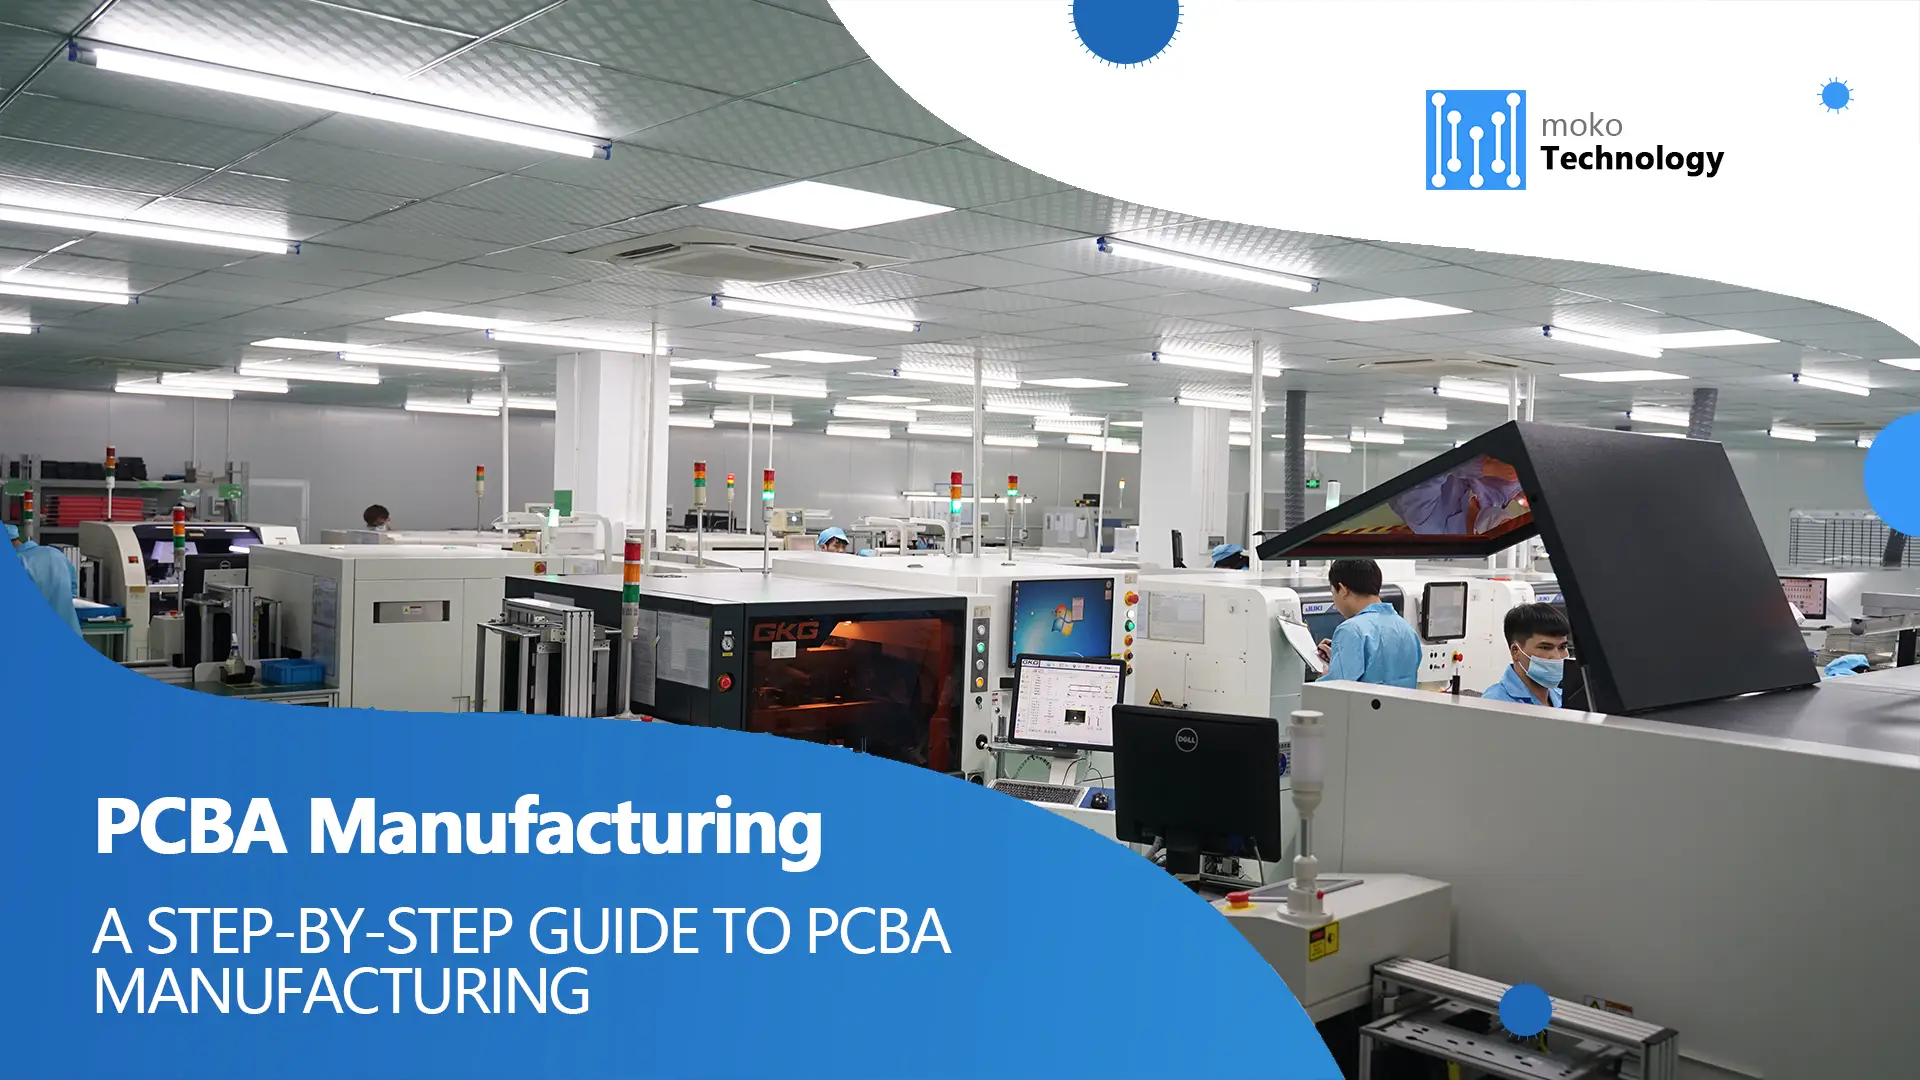 Un guide étape par étape pour la fabrication de PCBA